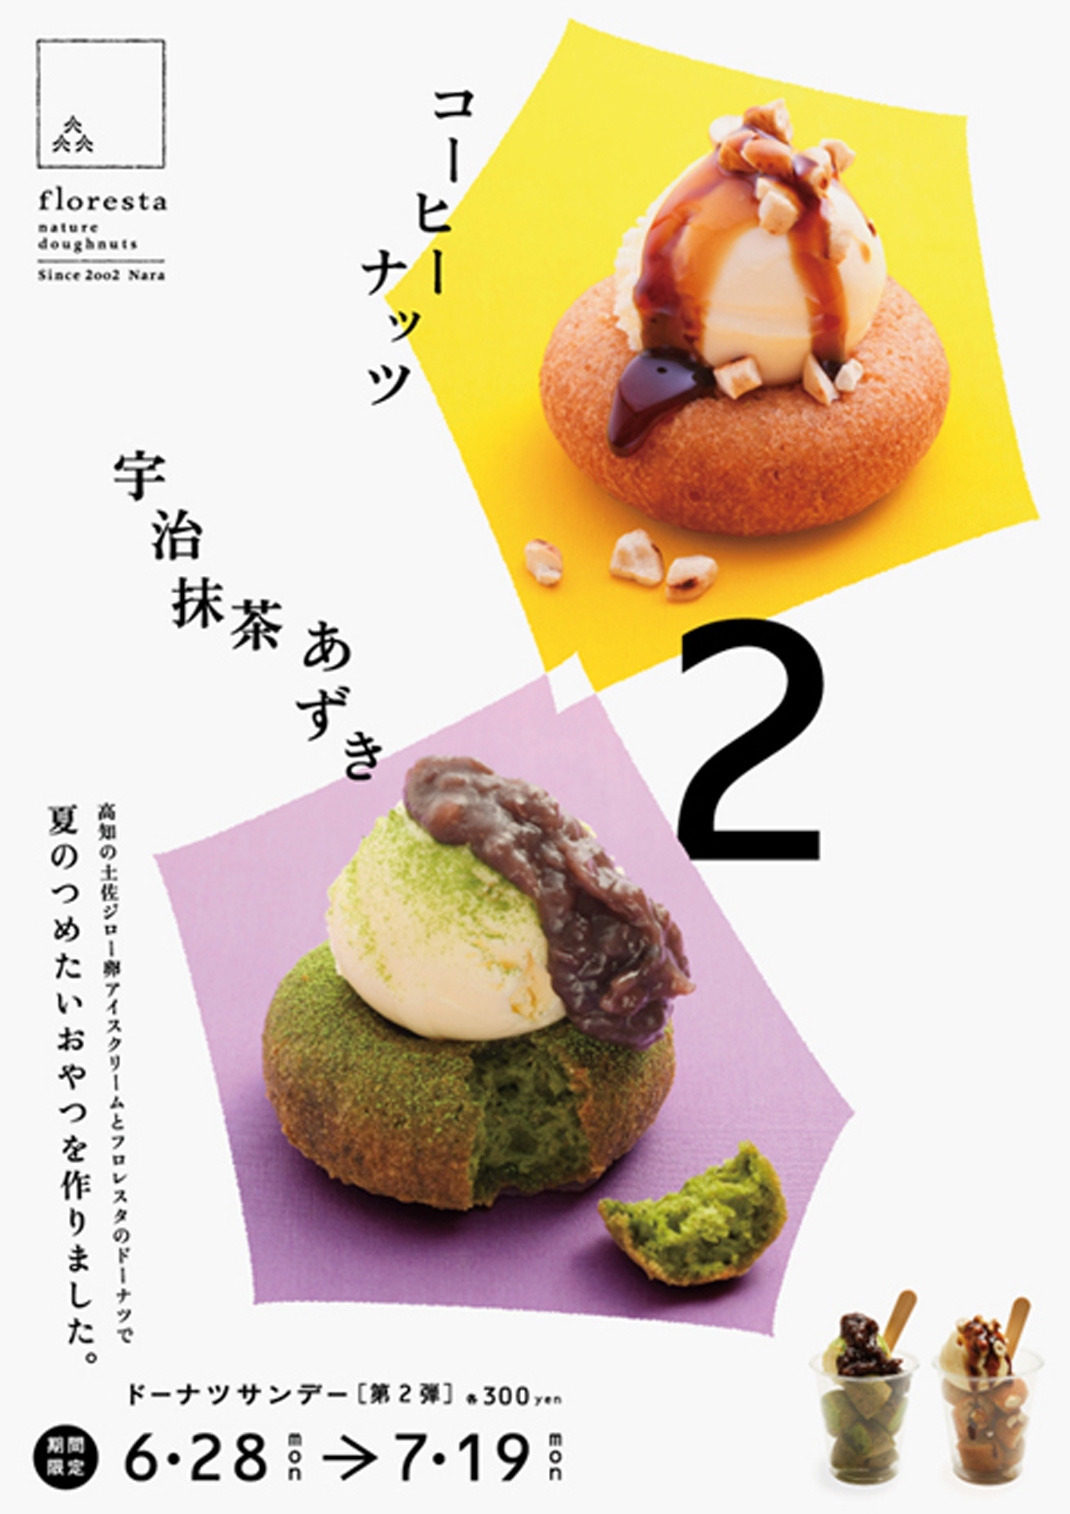 夏季限定甜甜圈海报设计 日本 海报设计 图形设计 版式设计 logo设计 vi设计 空间设计